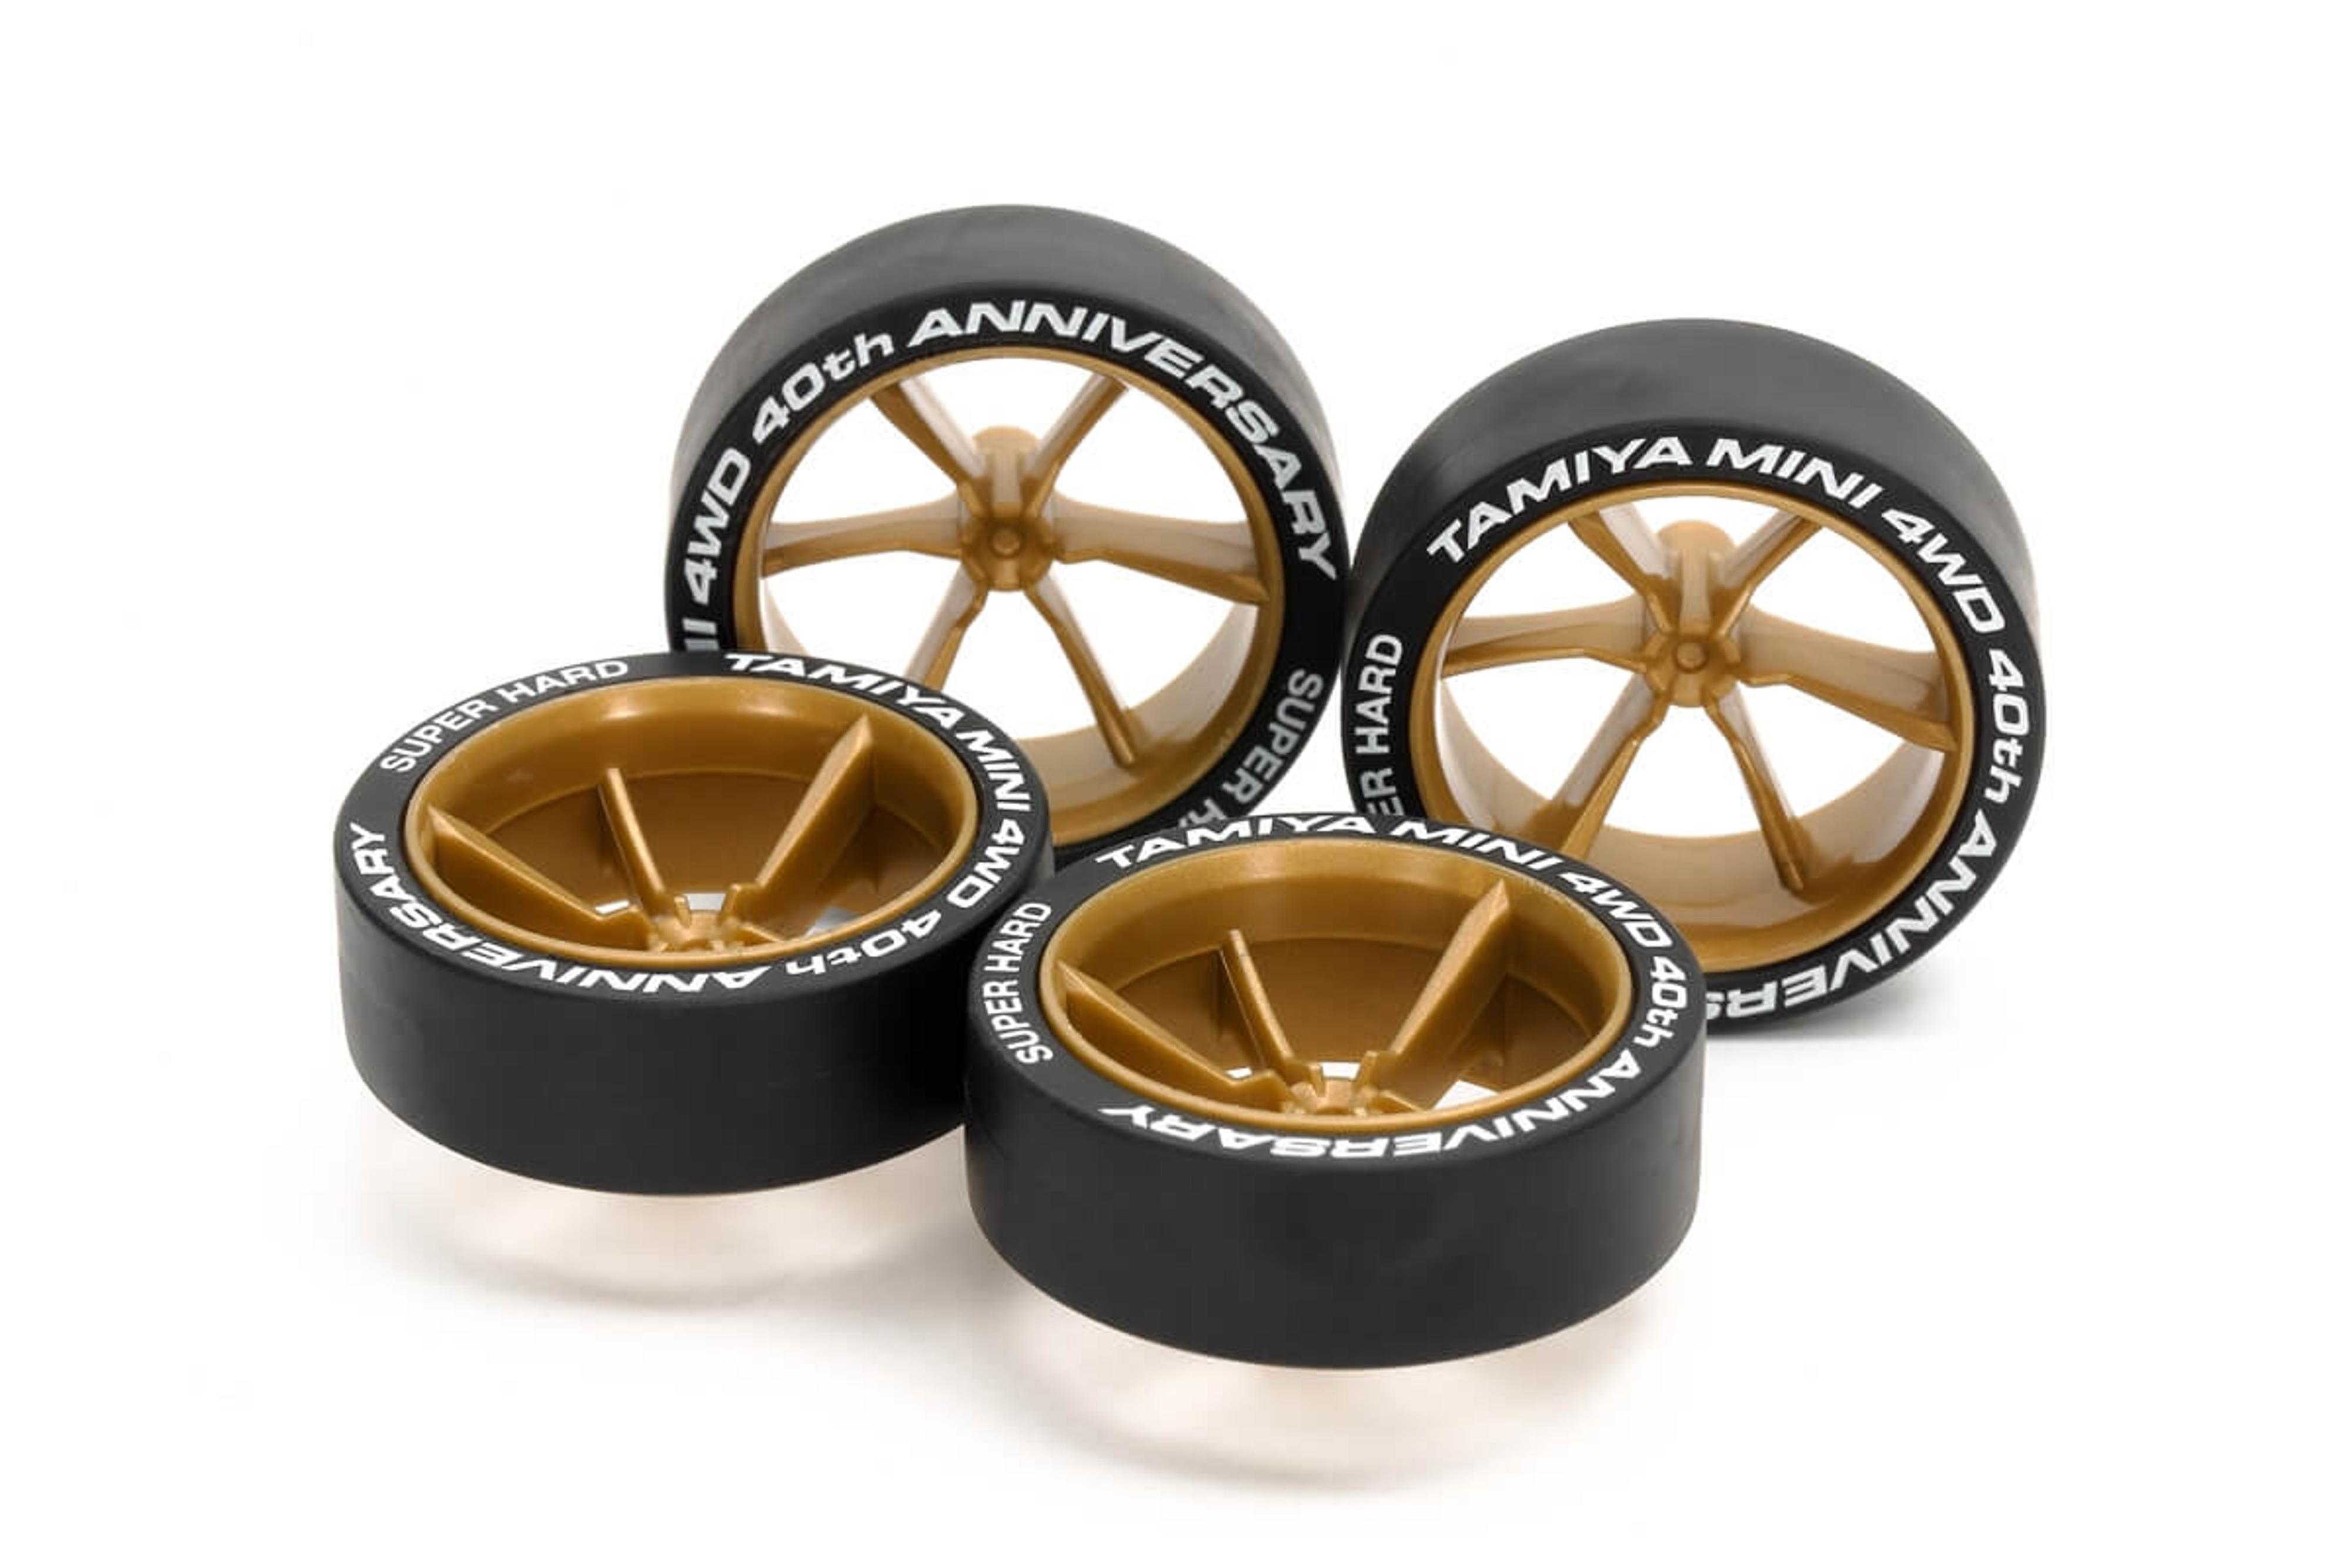 Tamiya Mini 4WD 40th Anniversary Jr Lp Tire / 6-Spoke Wheel Set (Black/Gold)